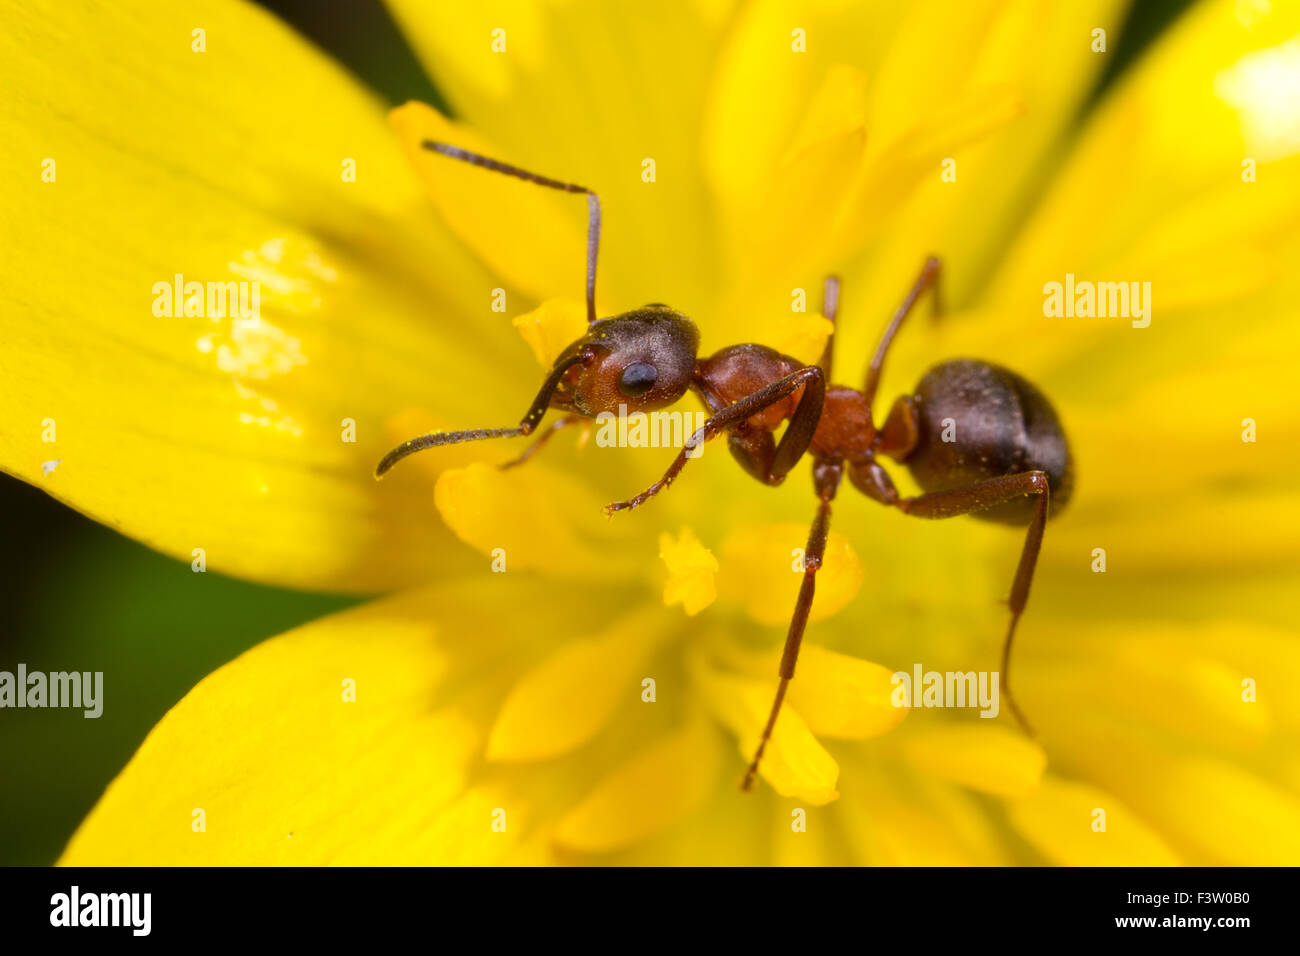 Red Wood Ameisen (Formica Rufa) Erwachsenen Arbeiter in einer kleinen Schöllkraut (Ranunculus Ficaria) Blume. Shropshire, England. April. Stockfoto